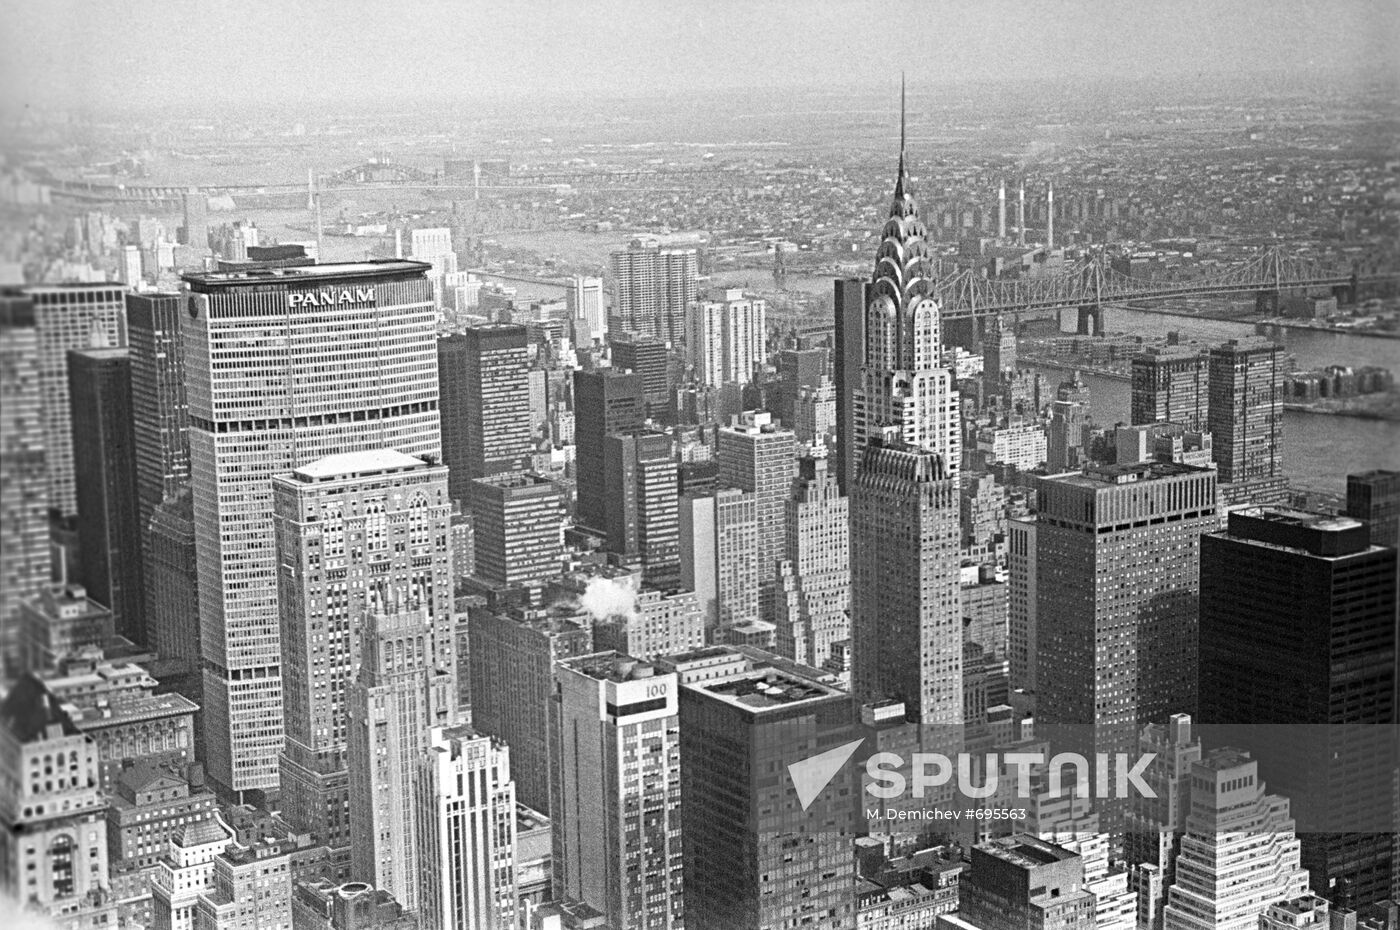 Panorama of New York